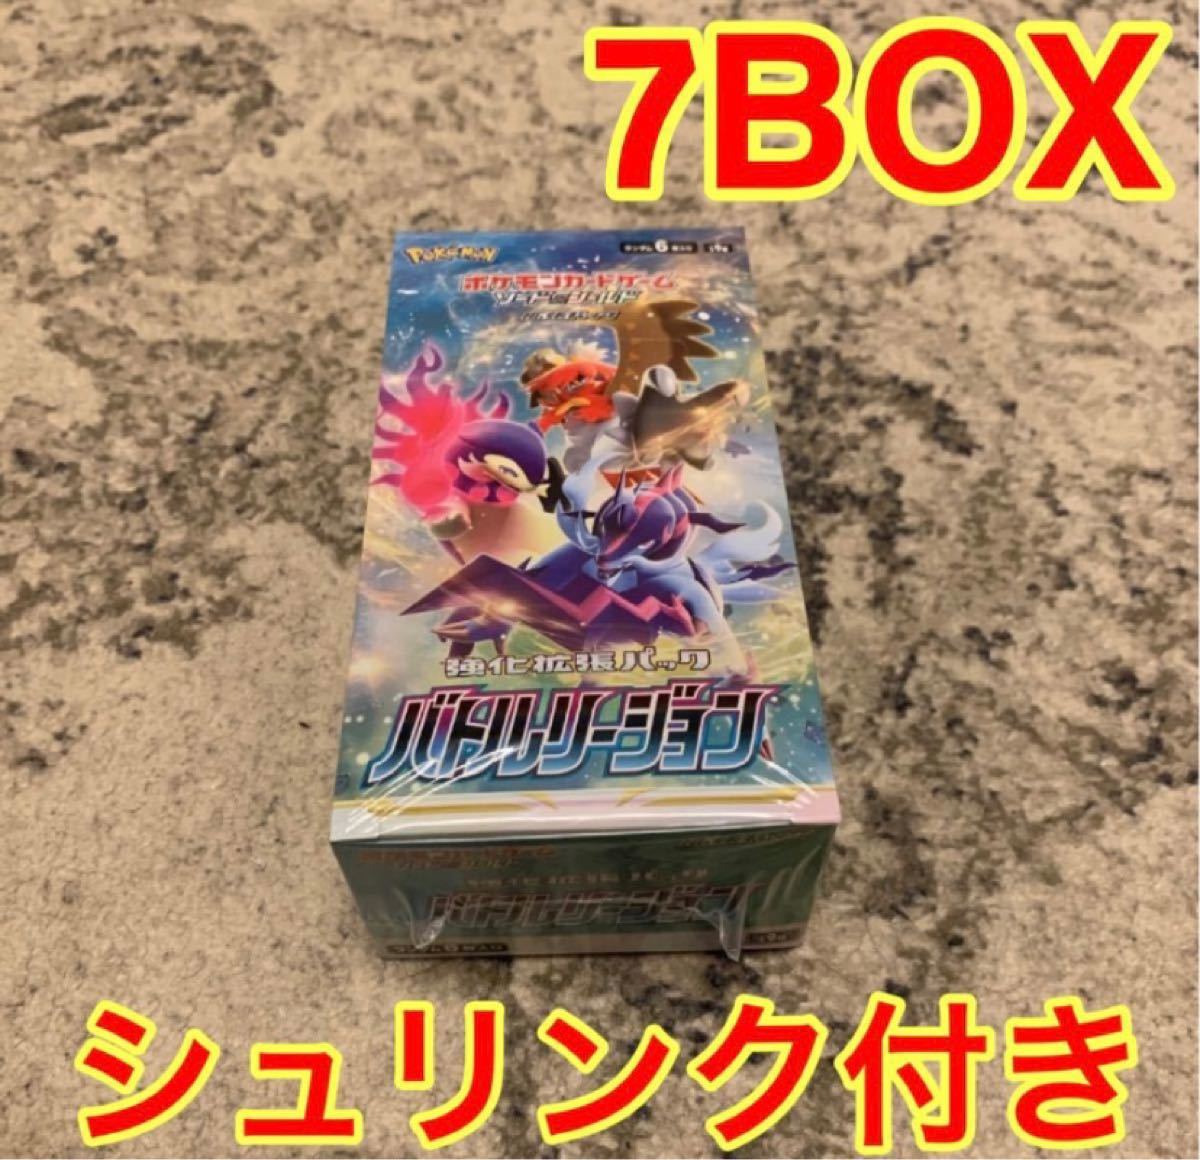 【シュリンク付き】ポケモンカードゲーム ソード&シールド 強化拡張パック バトルリージョン 7BOX